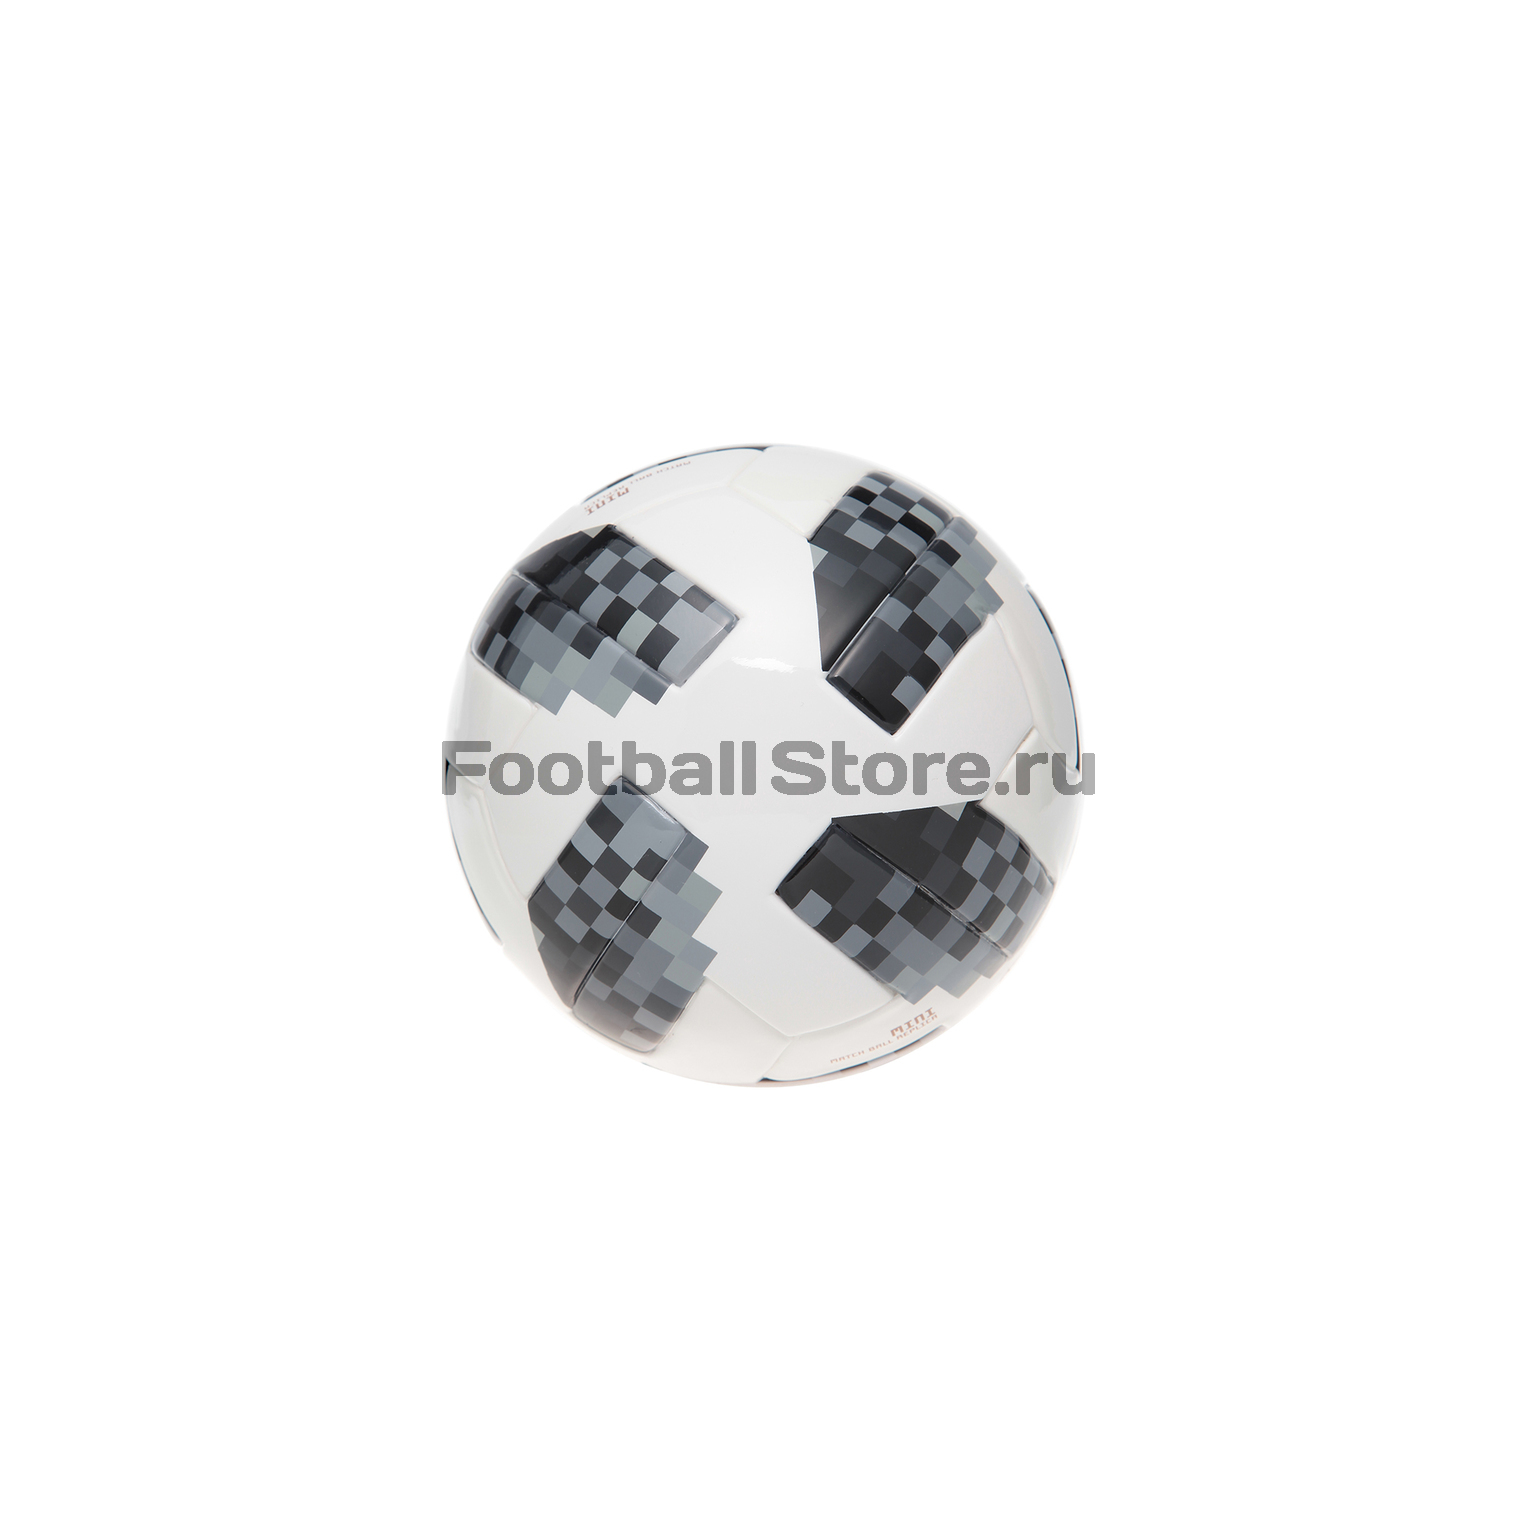 Футбольный сувенирный мяч Adidas Mini ЧМ-2018 CE8139